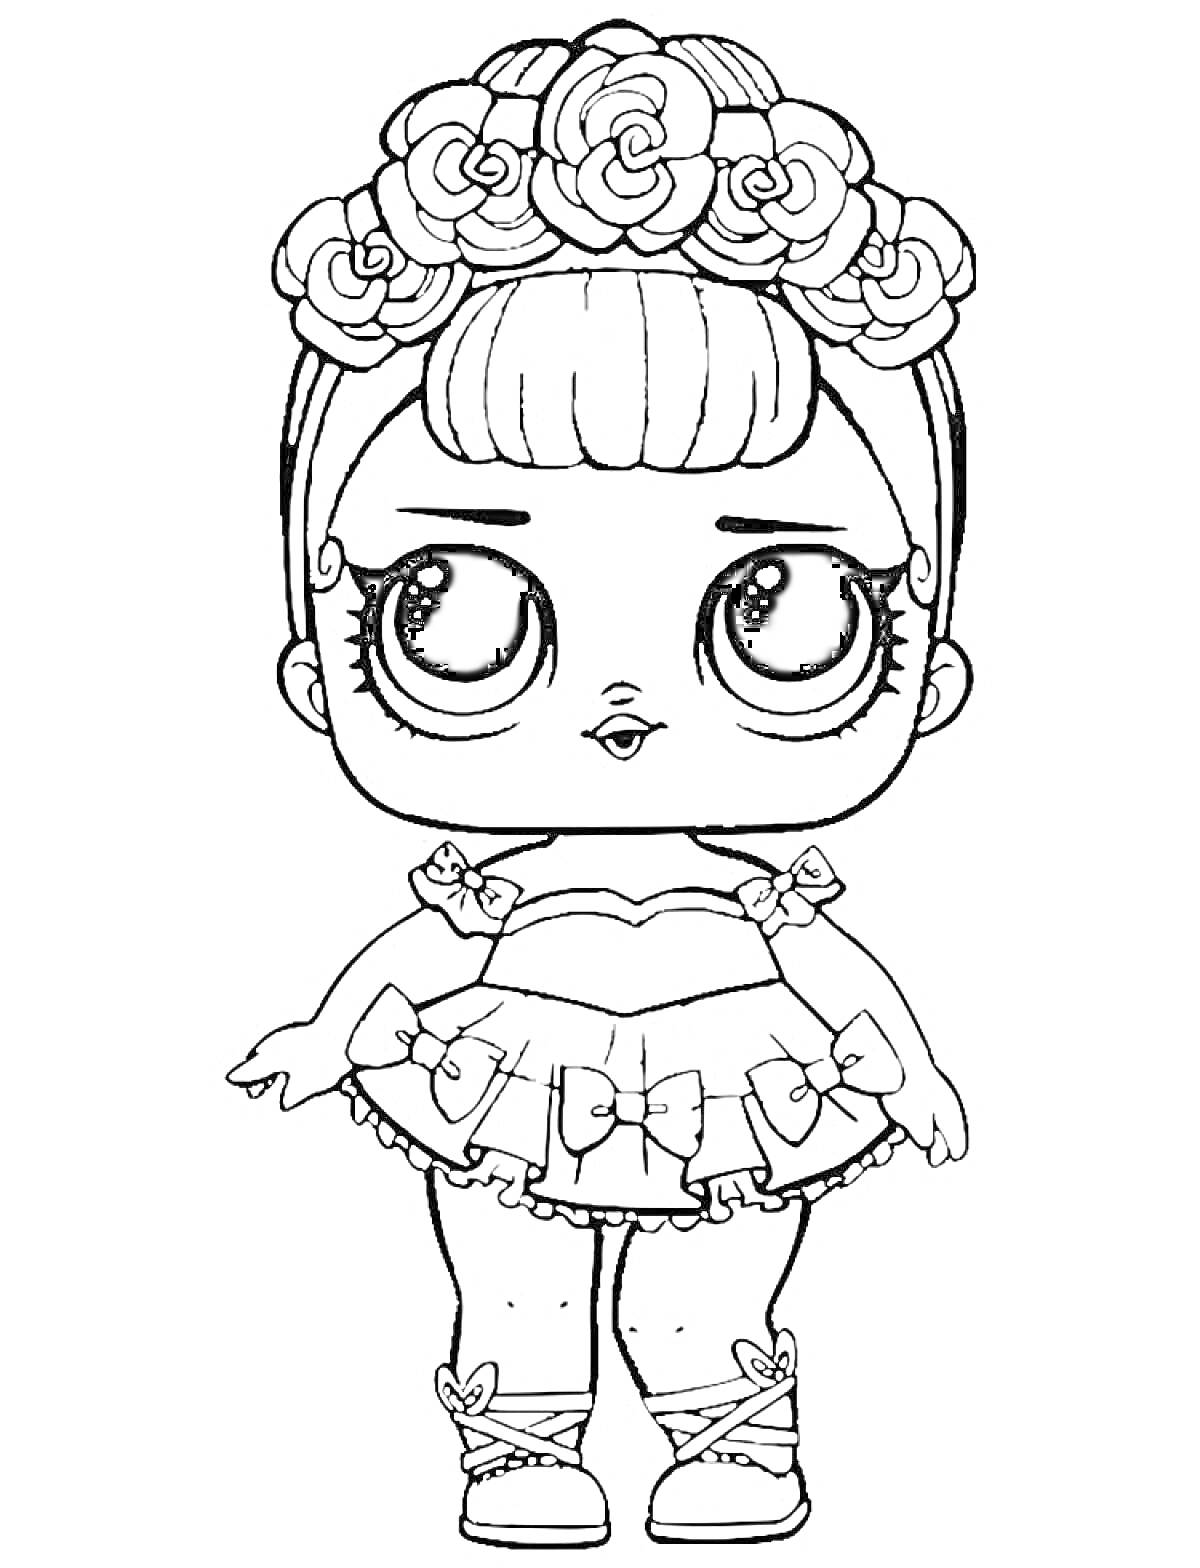 Раскраска Кукла Лол с венком из цветов на голове, одетая в платье с бантиками и туфли с бантиками